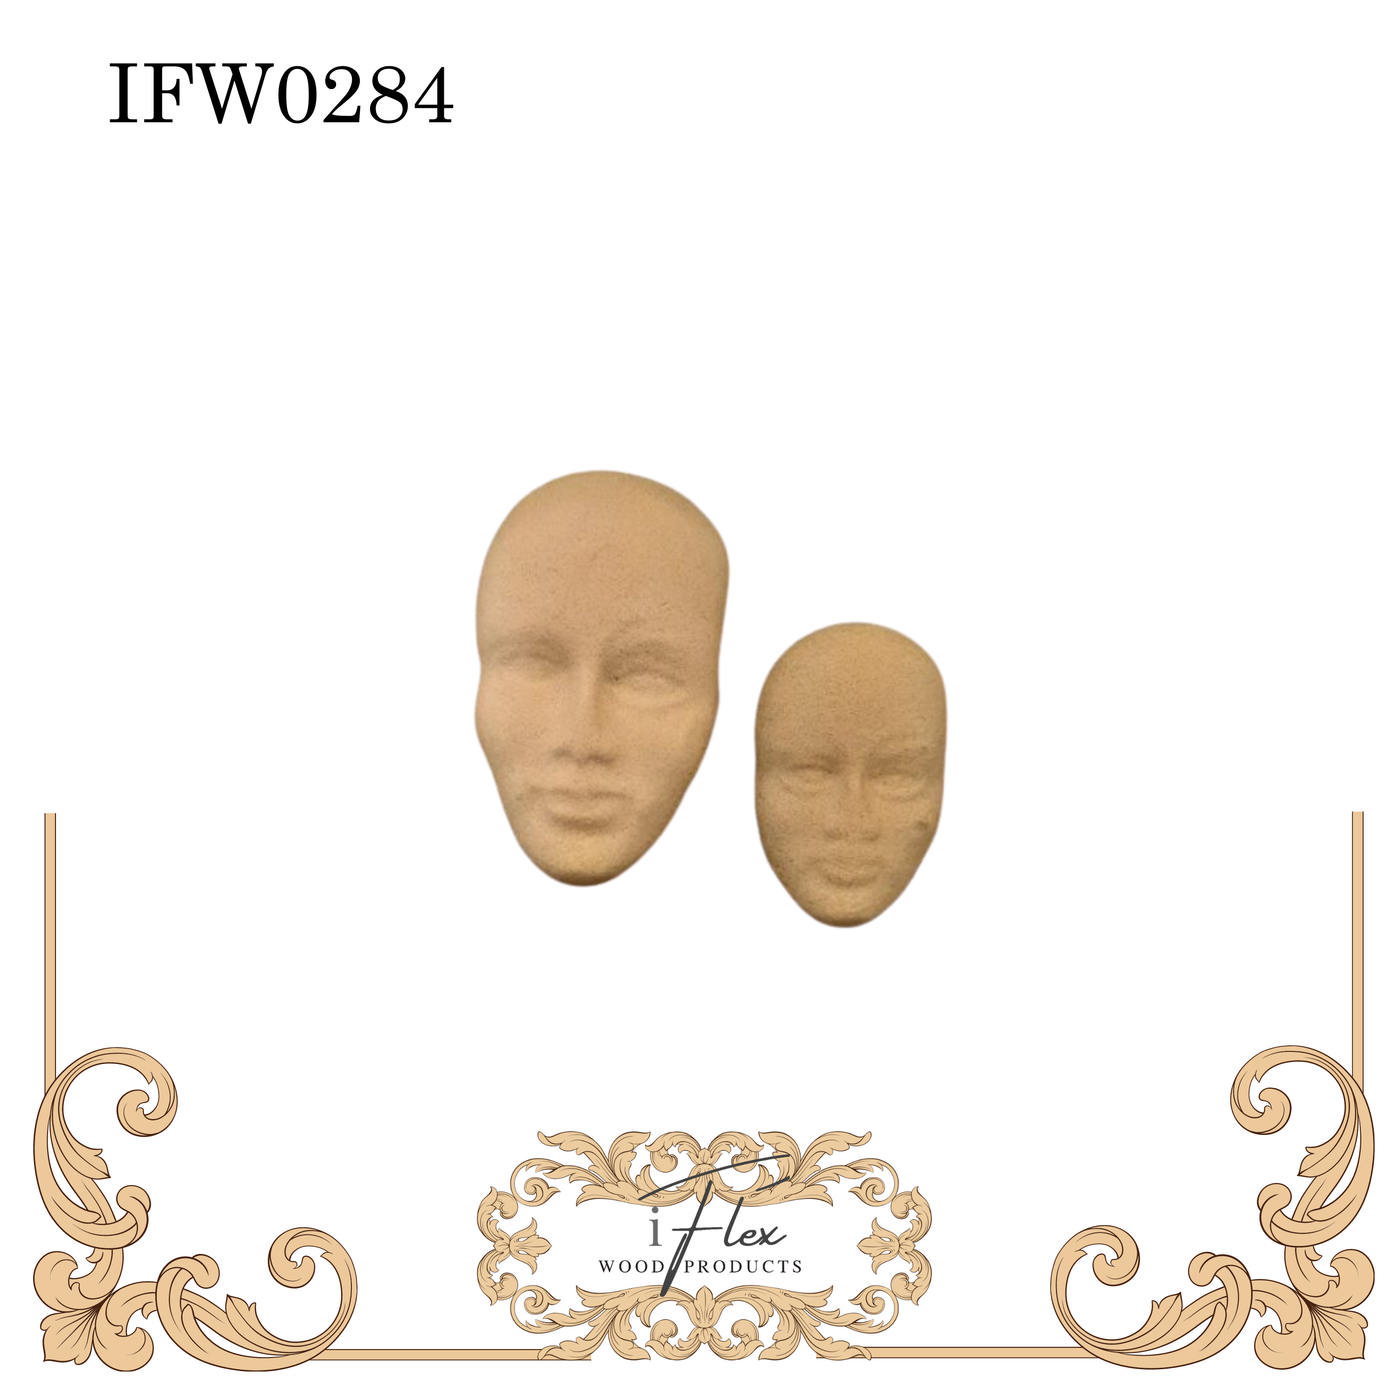 IFW 0284